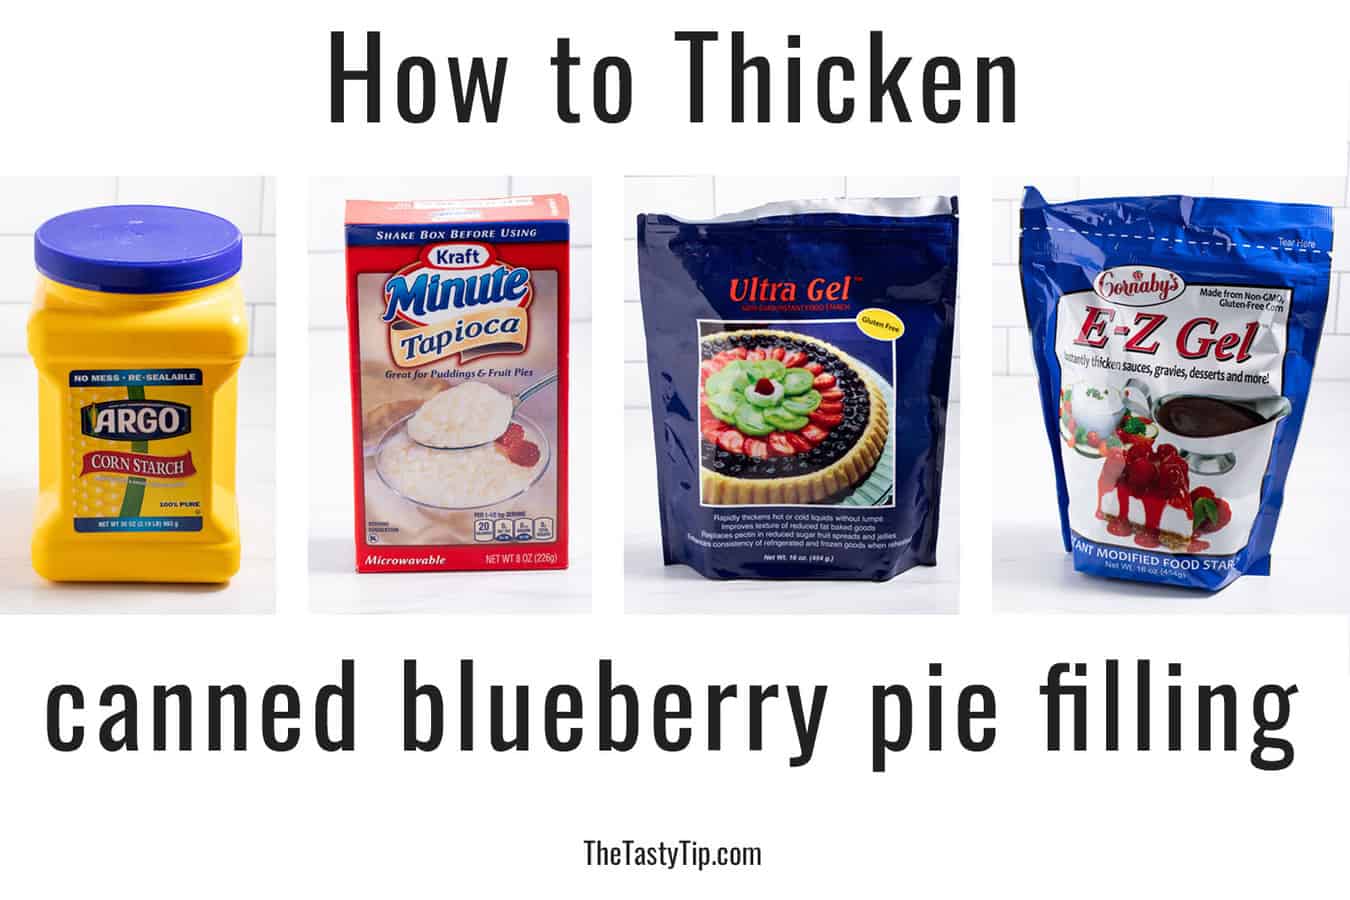 cornstarch, tapioca powder, utra gel, and ez gel to thicken blueberry pie filling